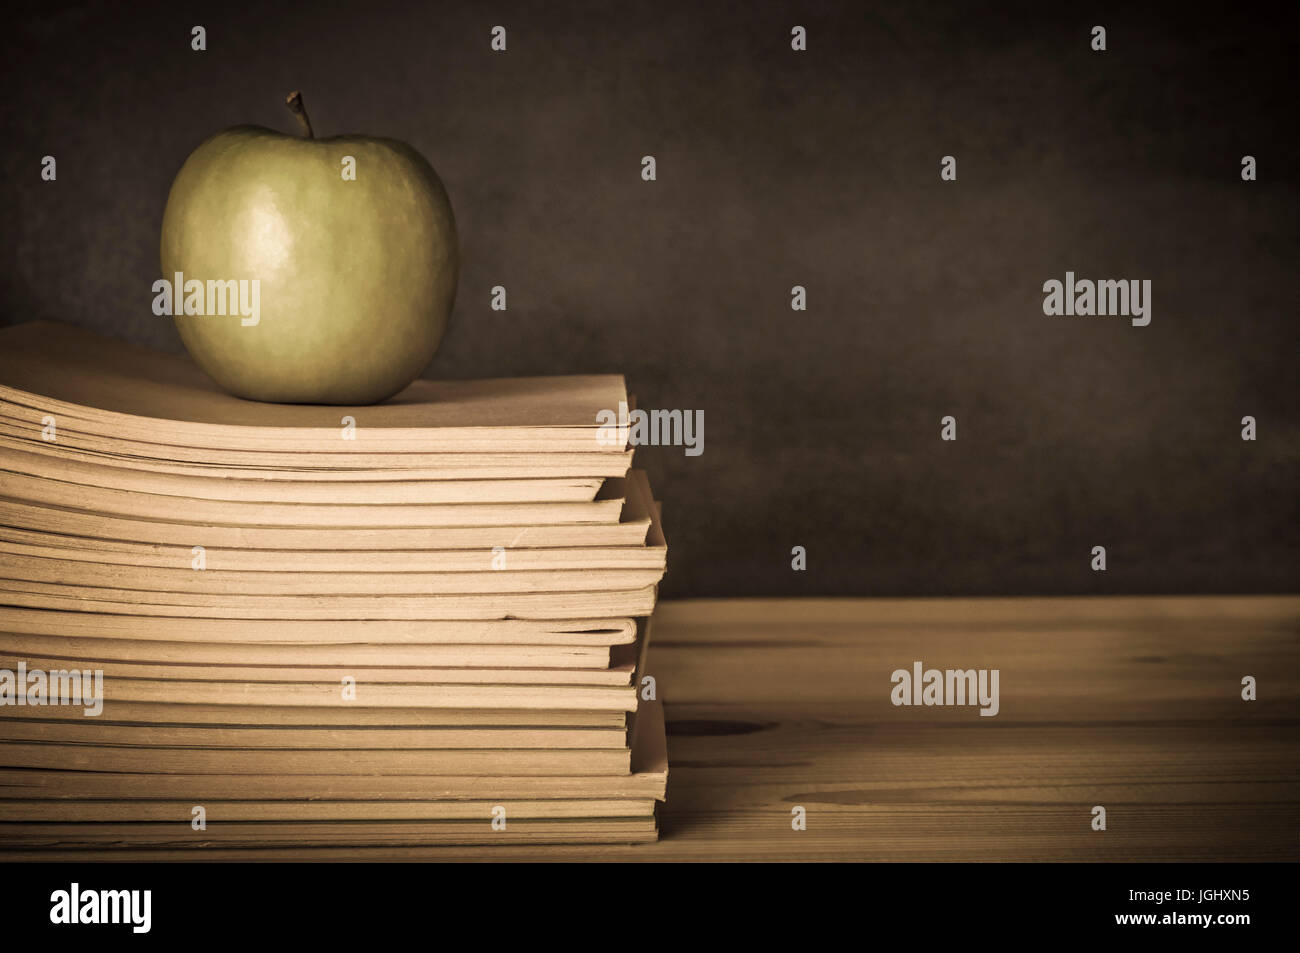 Vintage-Stil Bild eines Lehrers Schreibtisch aus Holz mit einem Apfel auf einem Haufen von gebrauchte, getragene, Schulhefte.  Tafel in soft-Fokus-Hintergrund.  U Stockfoto